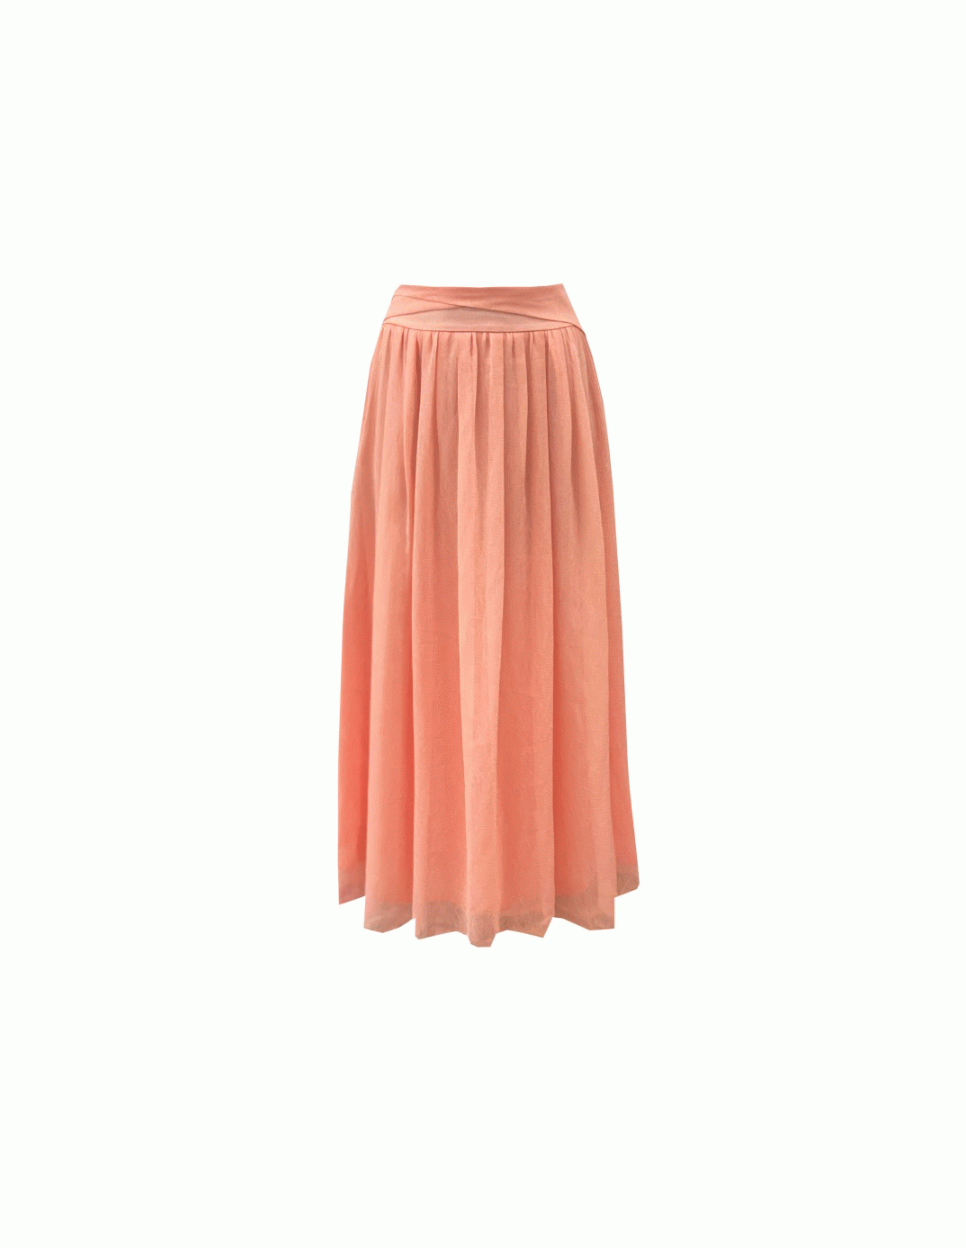 FE20SS Volent Skirt